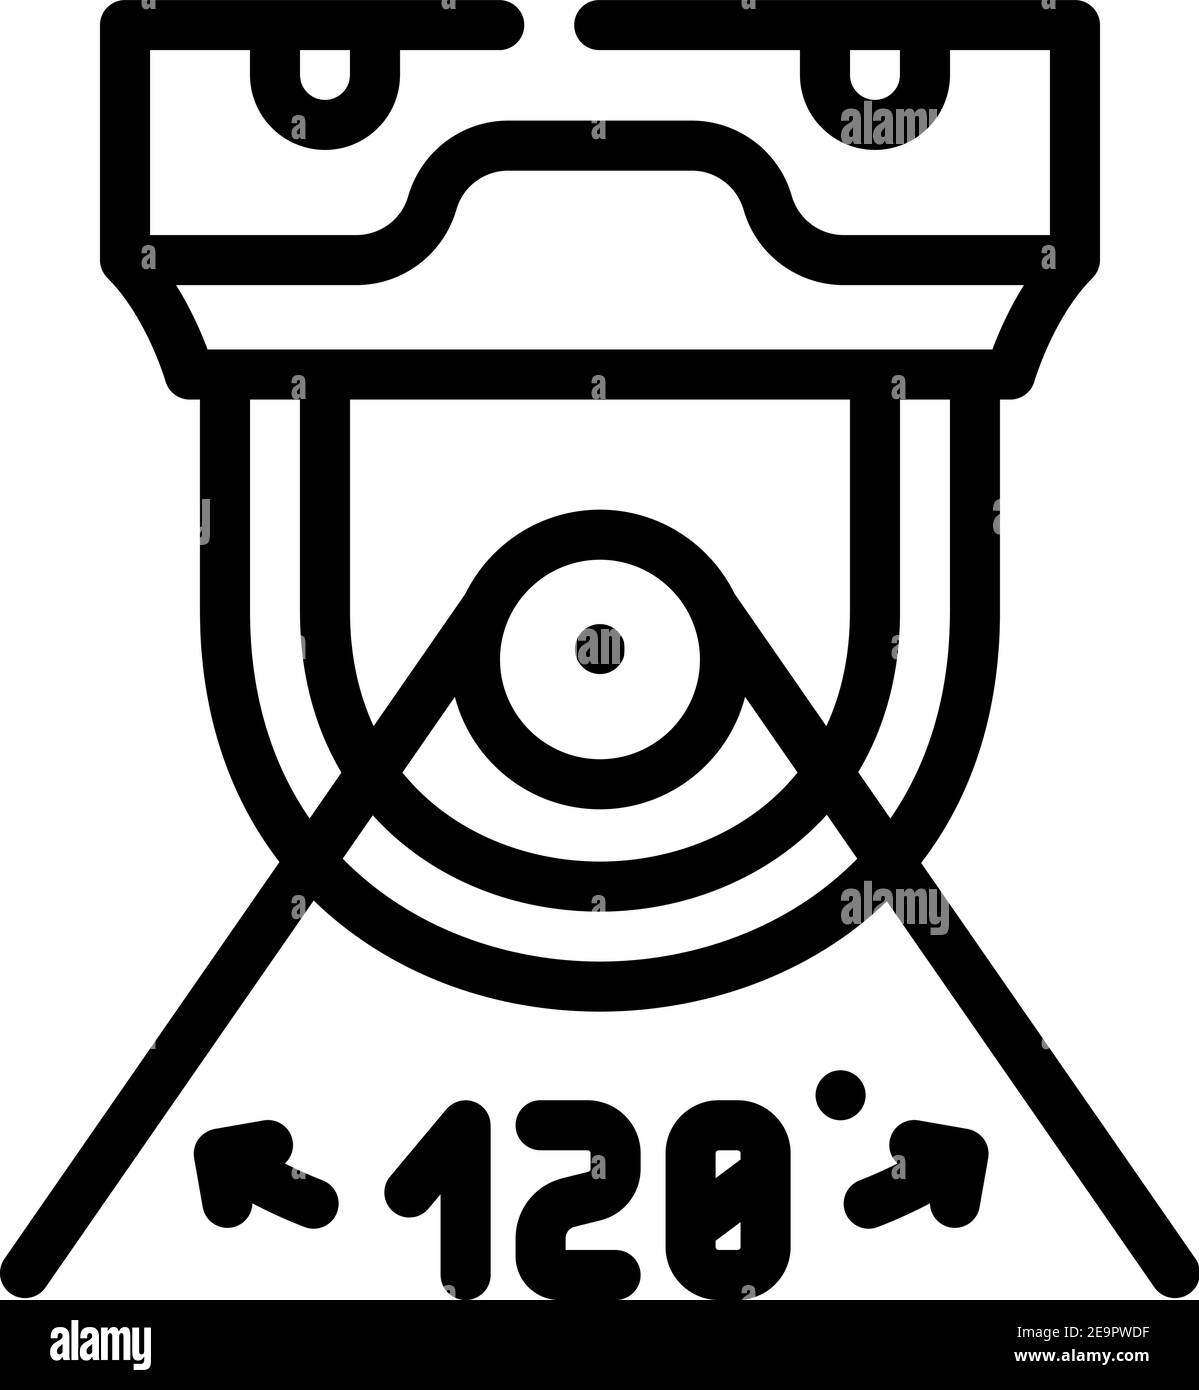 immagine vettoriale dell'icona della linea della telecamera dell'angolo di visualizzazione Illustrazione Vettoriale